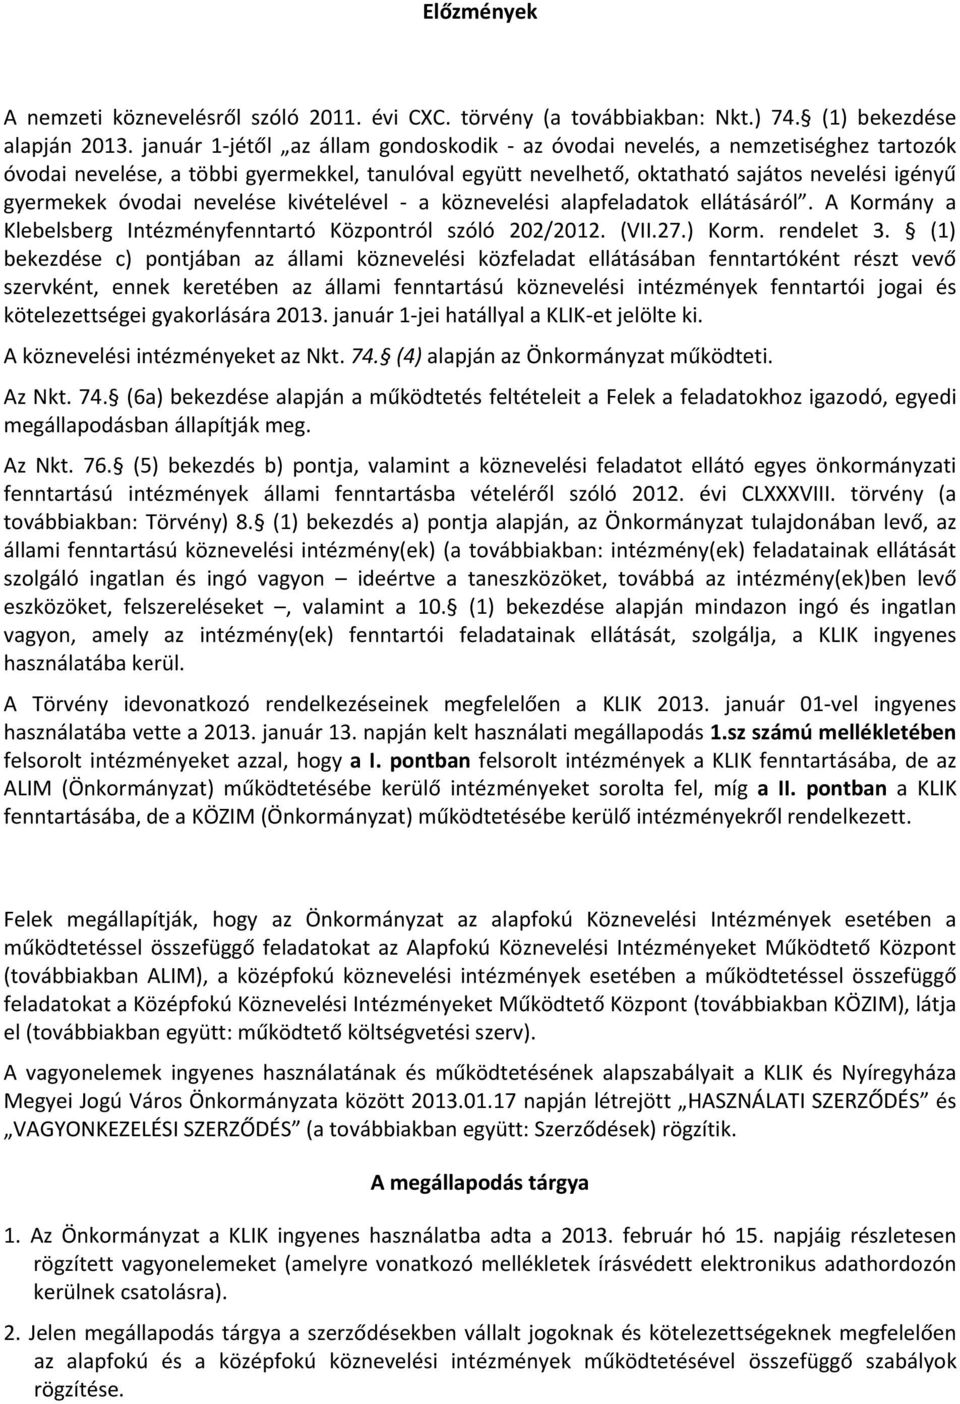 nevelése kivételével - a köznevelési alapfeladatok ellátásáról. A Kormány a Klebelsberg Intézményfenntartó Központról szóló 202/2012. (VII.27.) Korm. rendelet 3.